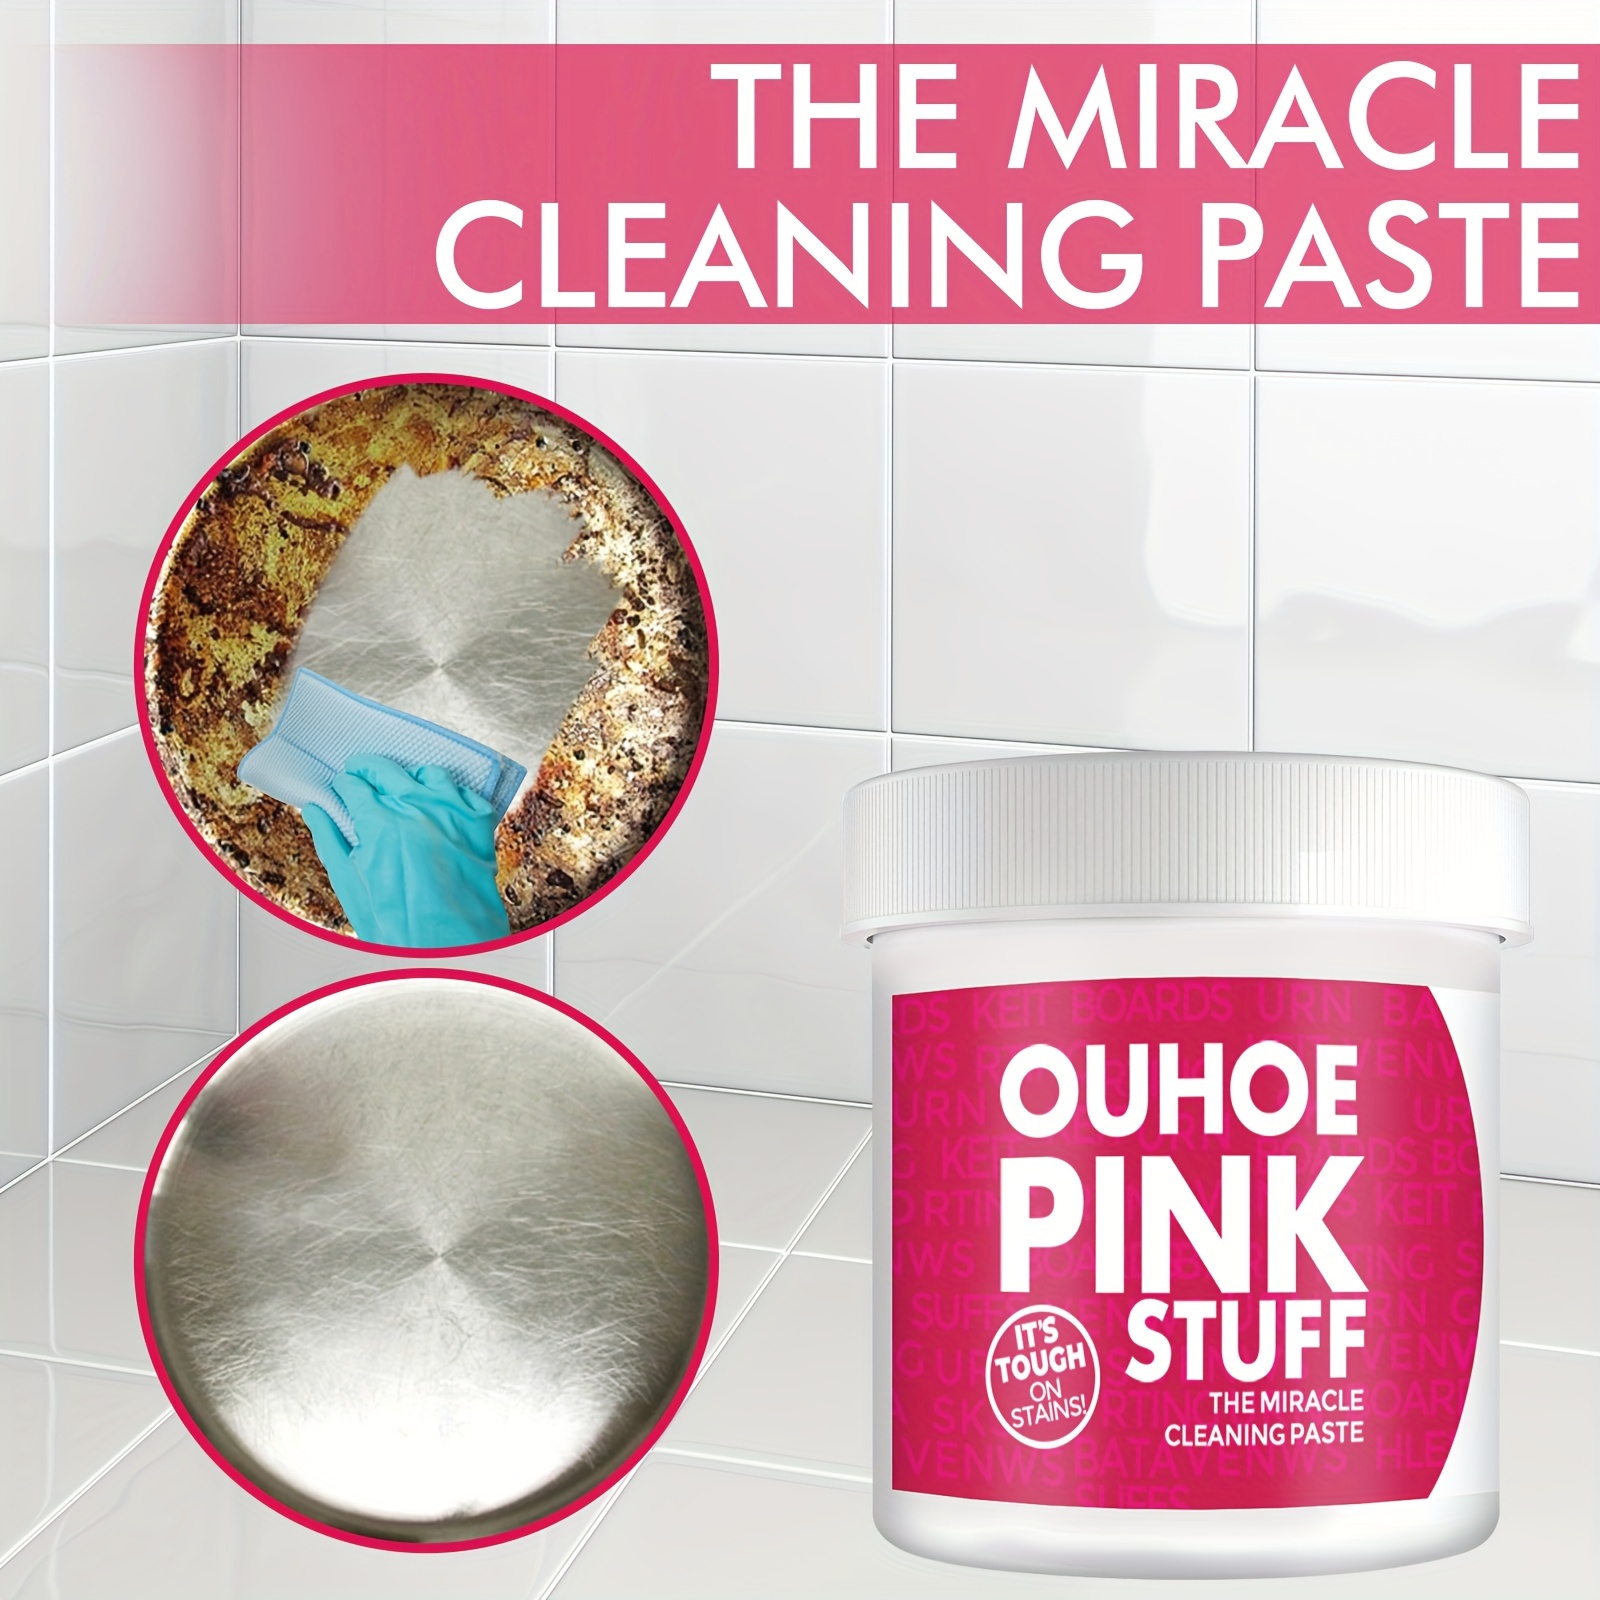 Pasta limpiadora mágica rosa de acero inoxidable, espejo mágico rosa,  eliminación de óxido, suciedad, limpieza, 1 pieza, Moda de Mujer